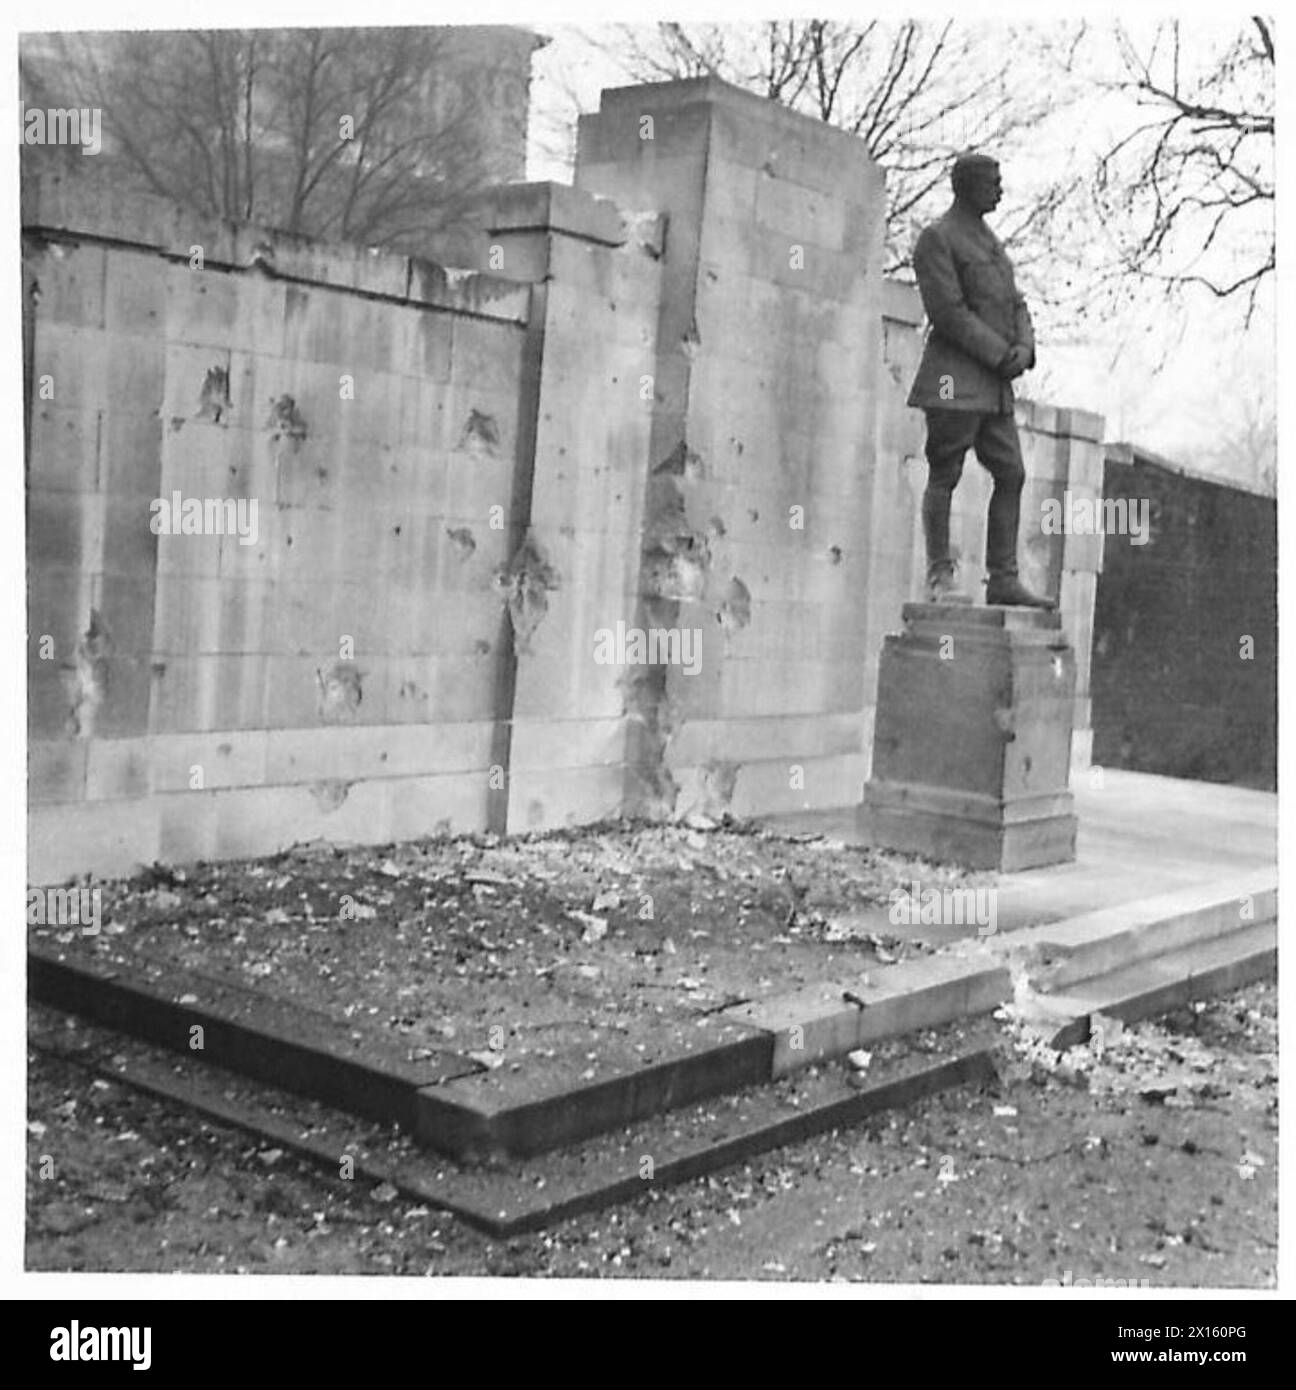 DOWNING STREET WURDE WÄHREND DES RAID BESCHÄDIGT - das Kitchener-Denkmal auf der Rückseite von No. 10 wurde während des RAID beschädigt. Trümmer sind um die Gedenkstätte herum zu sehen. Die Statue wurde an mehreren Stellen der British Army durchbohrt Stockfoto